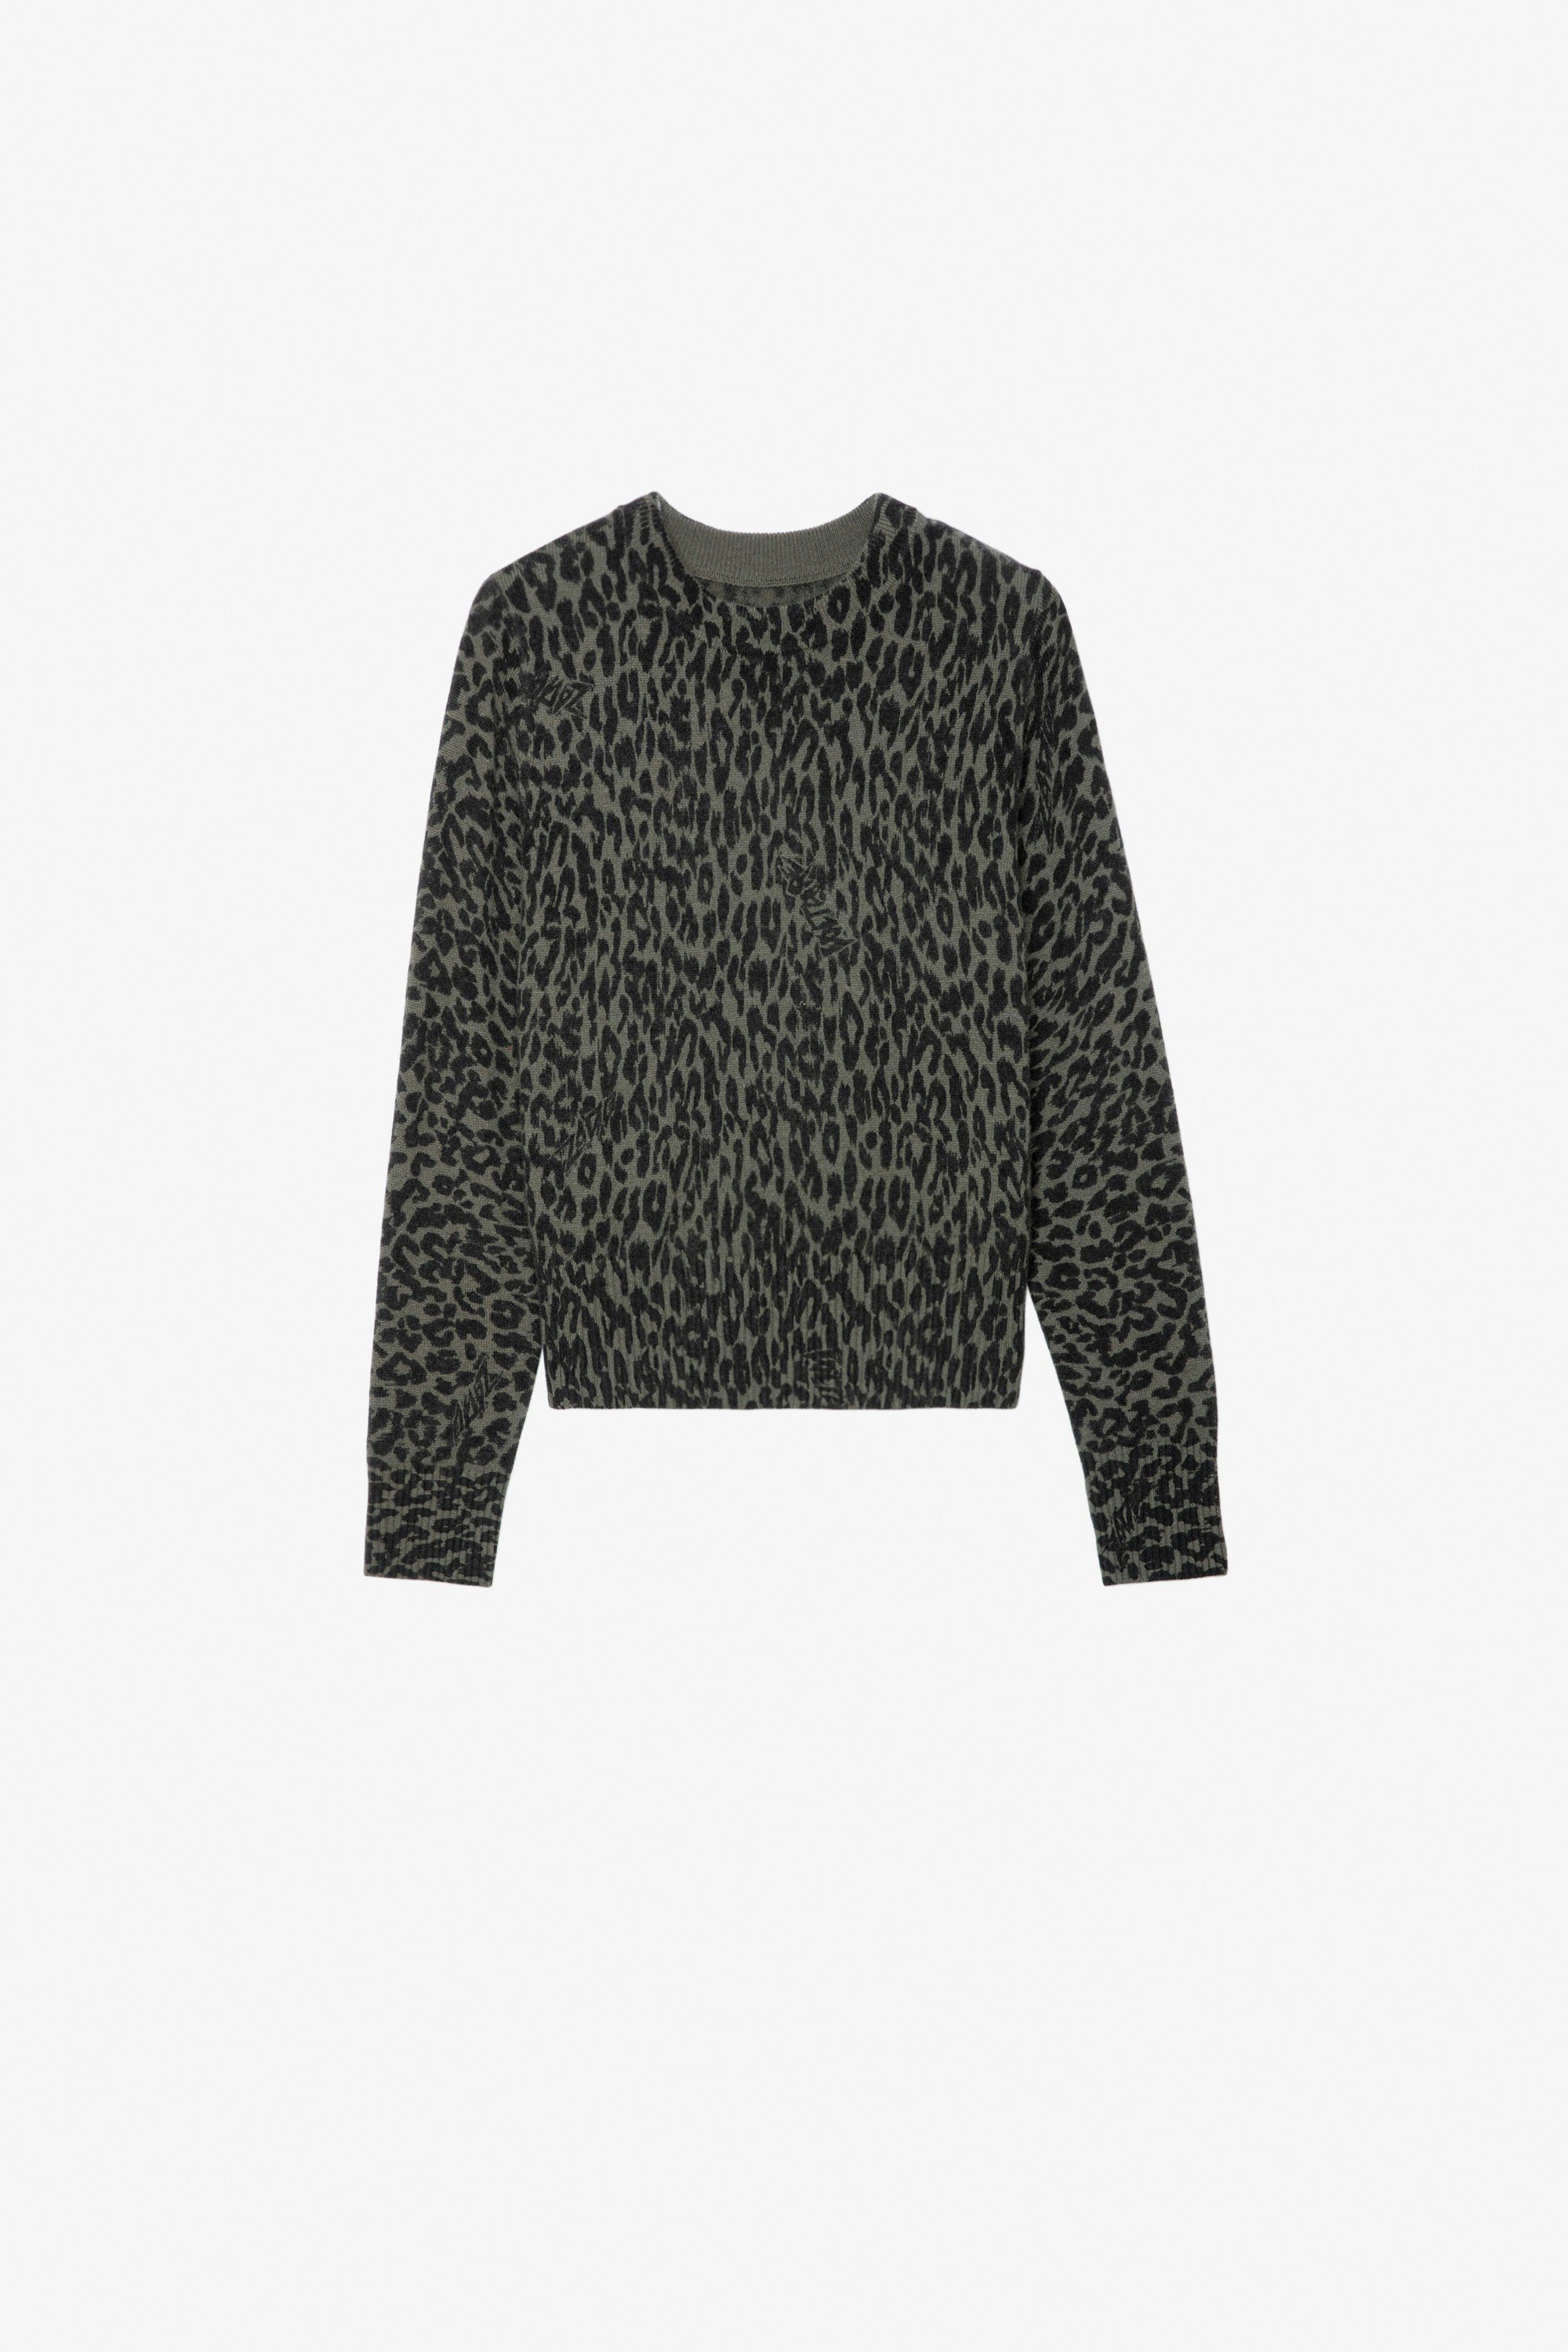 Reglis Girls’ Jumper Girls’ khaki leopard-print knit jumper.